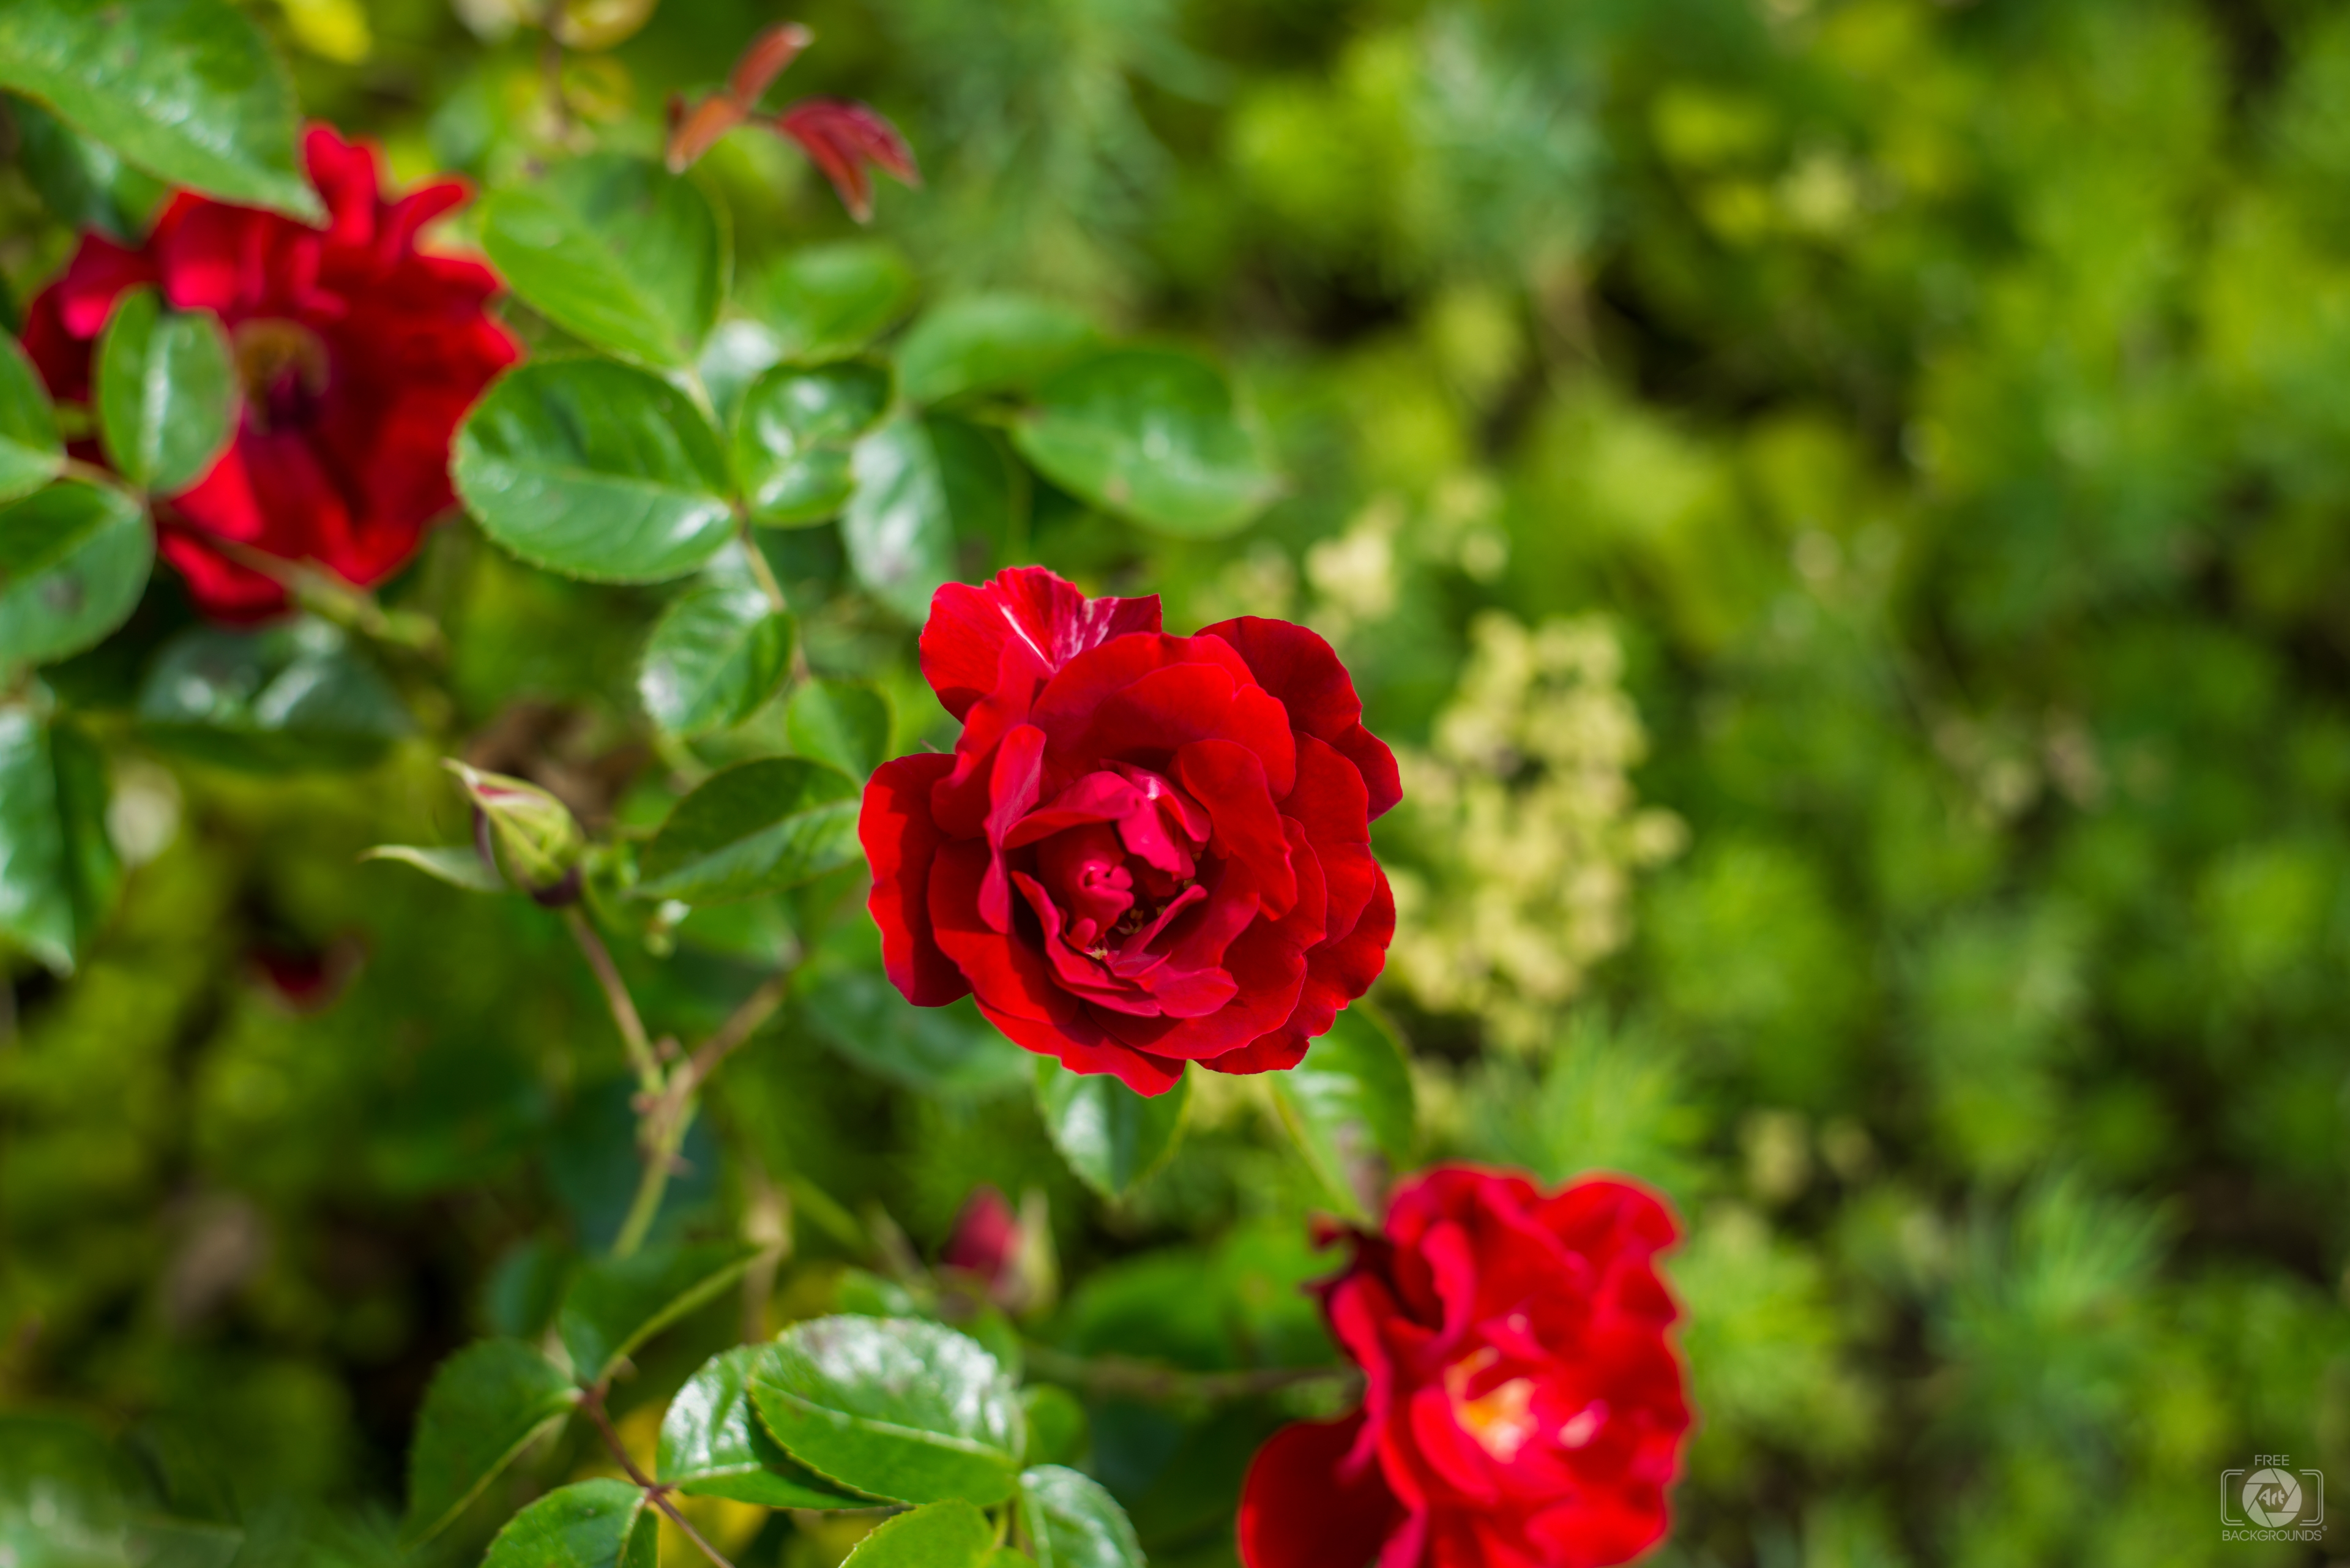 Hình ảnh nền xanh lá cây và hoa hồng sẽ đem đến cho bạn cảm giác tươi mới và sáng tạo. Bạn sẽ bị cuốn hút bởi nét đẹp tinh tế của hoa hồng và sự tươi mới của màu xanh lá cây tươi sáng. Hãy tới ngay và tận hưởng những khoảnh khắc thật đặc biệt!